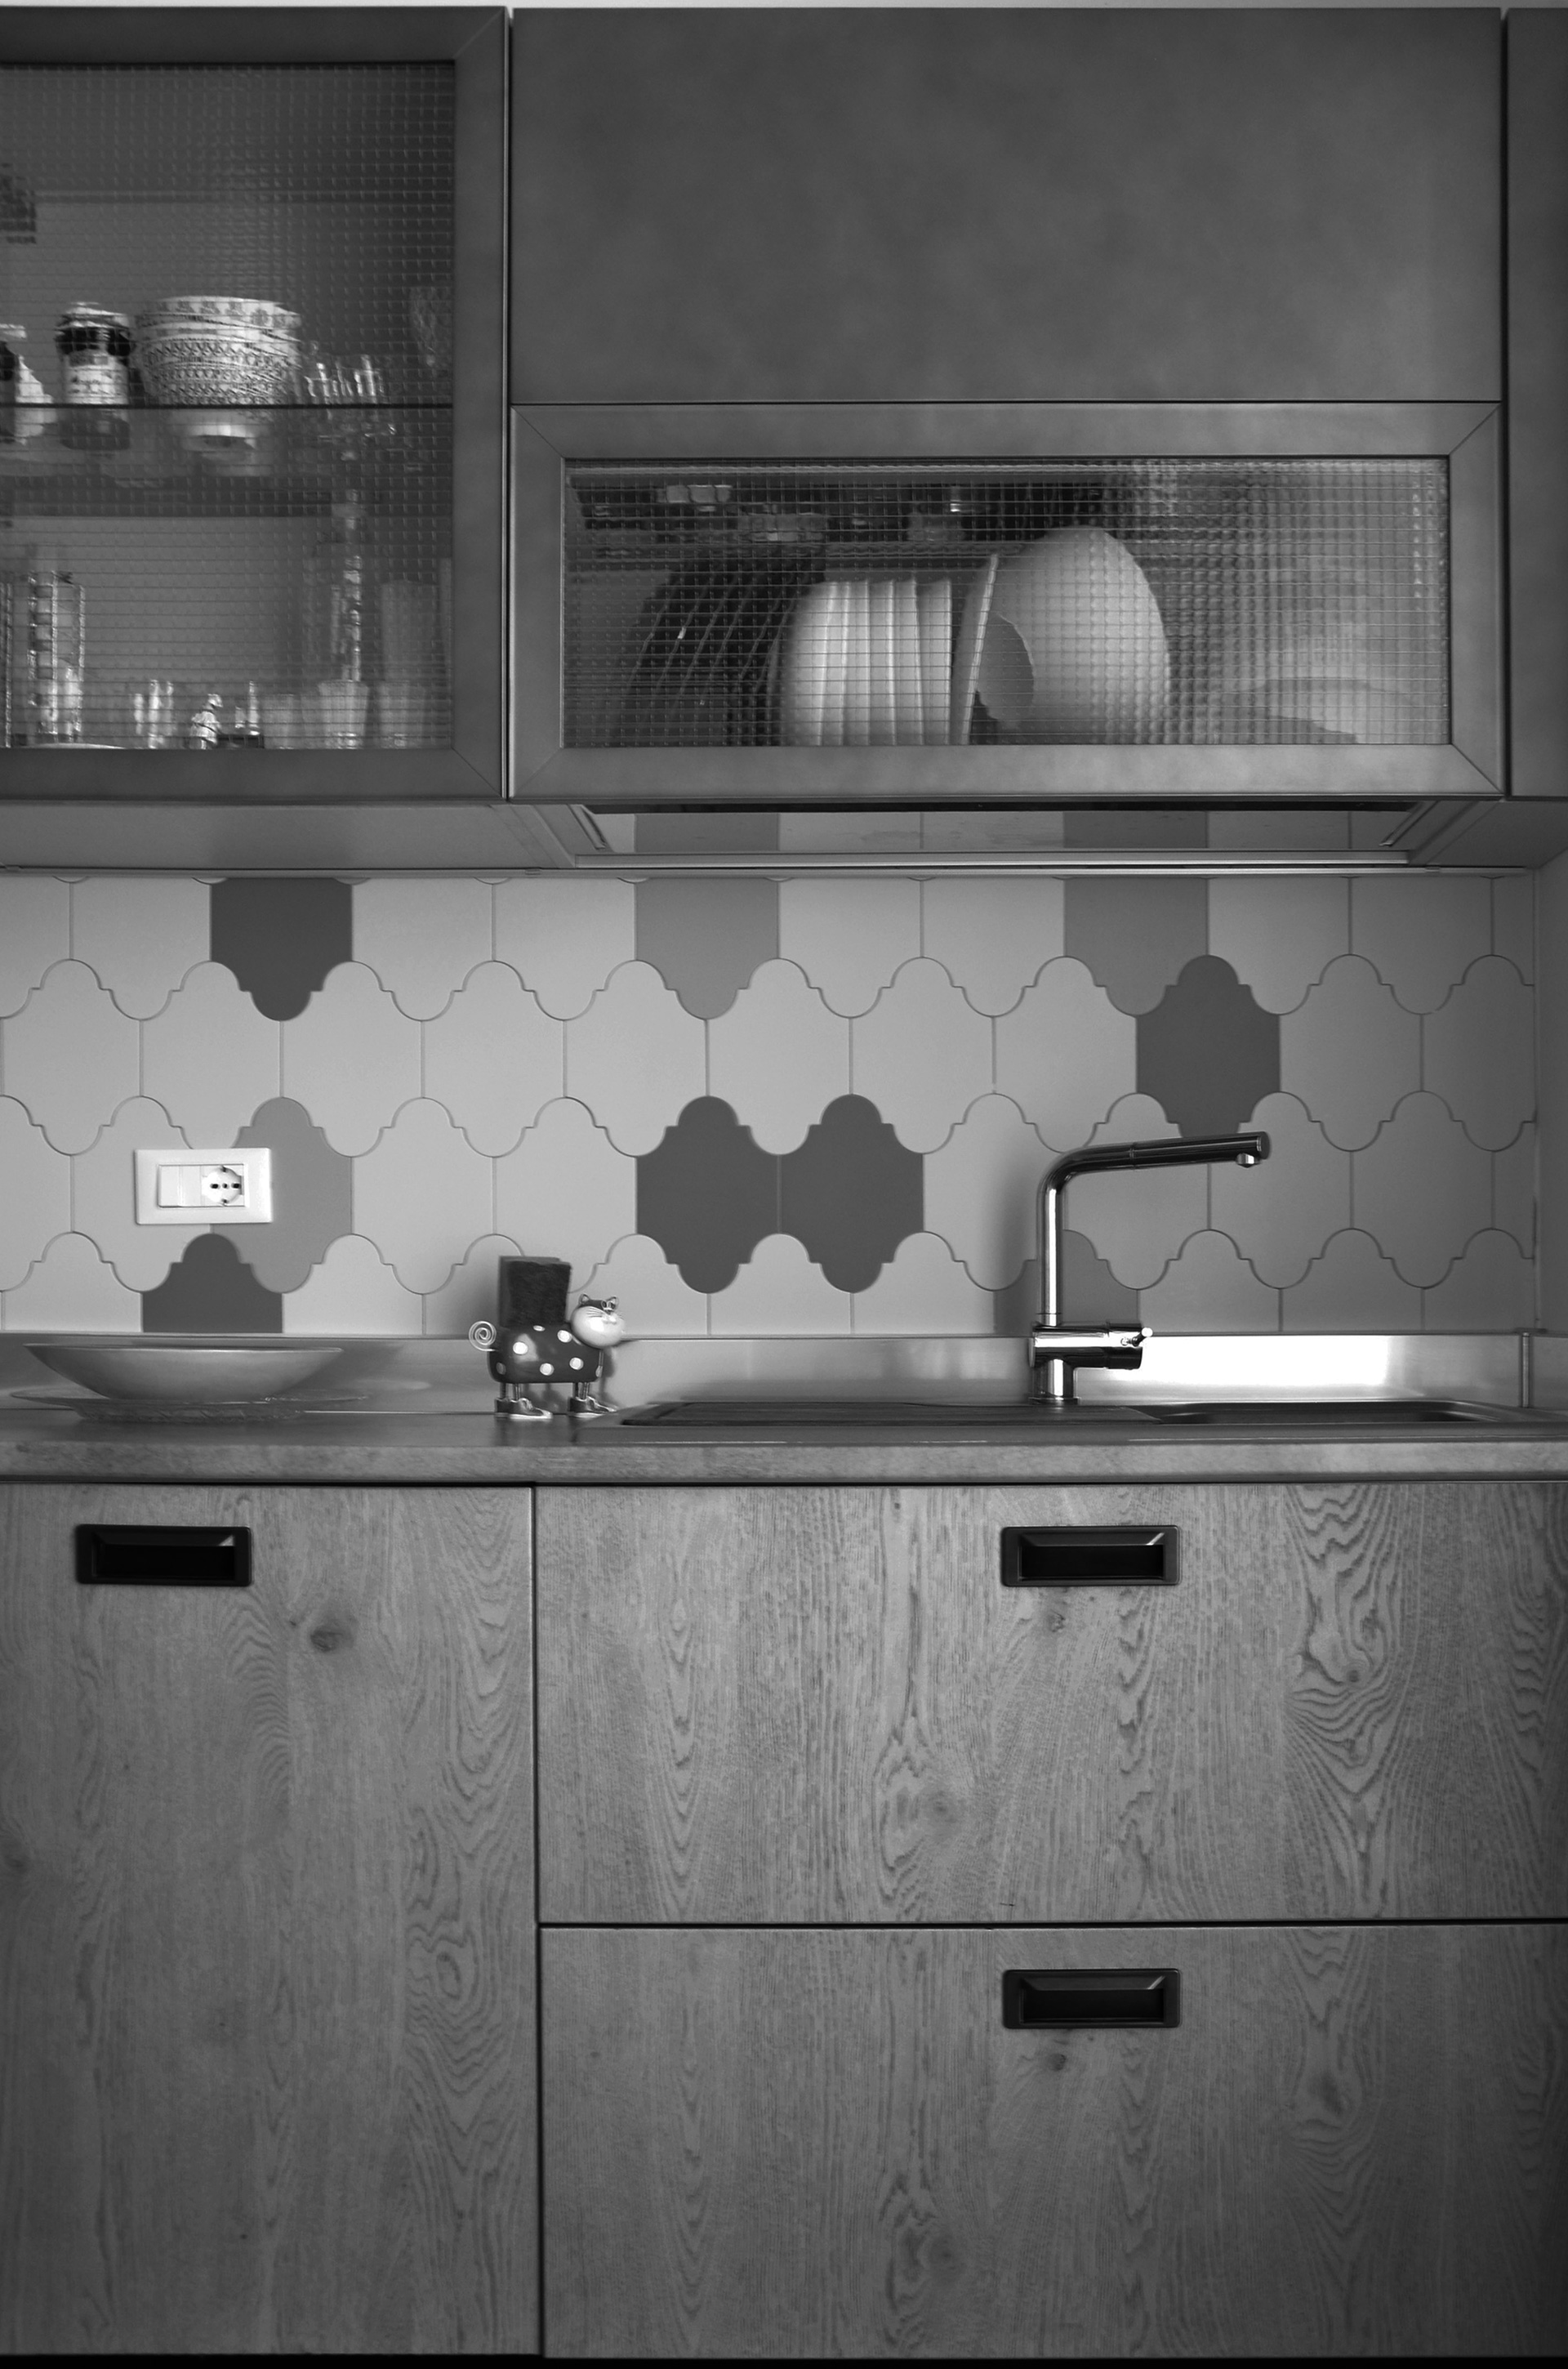 casa MG EG. anche nella scalta della cucina trasuda il gusto estetico per "l'industrial" con la cucina della Scavolini firmata Diesel